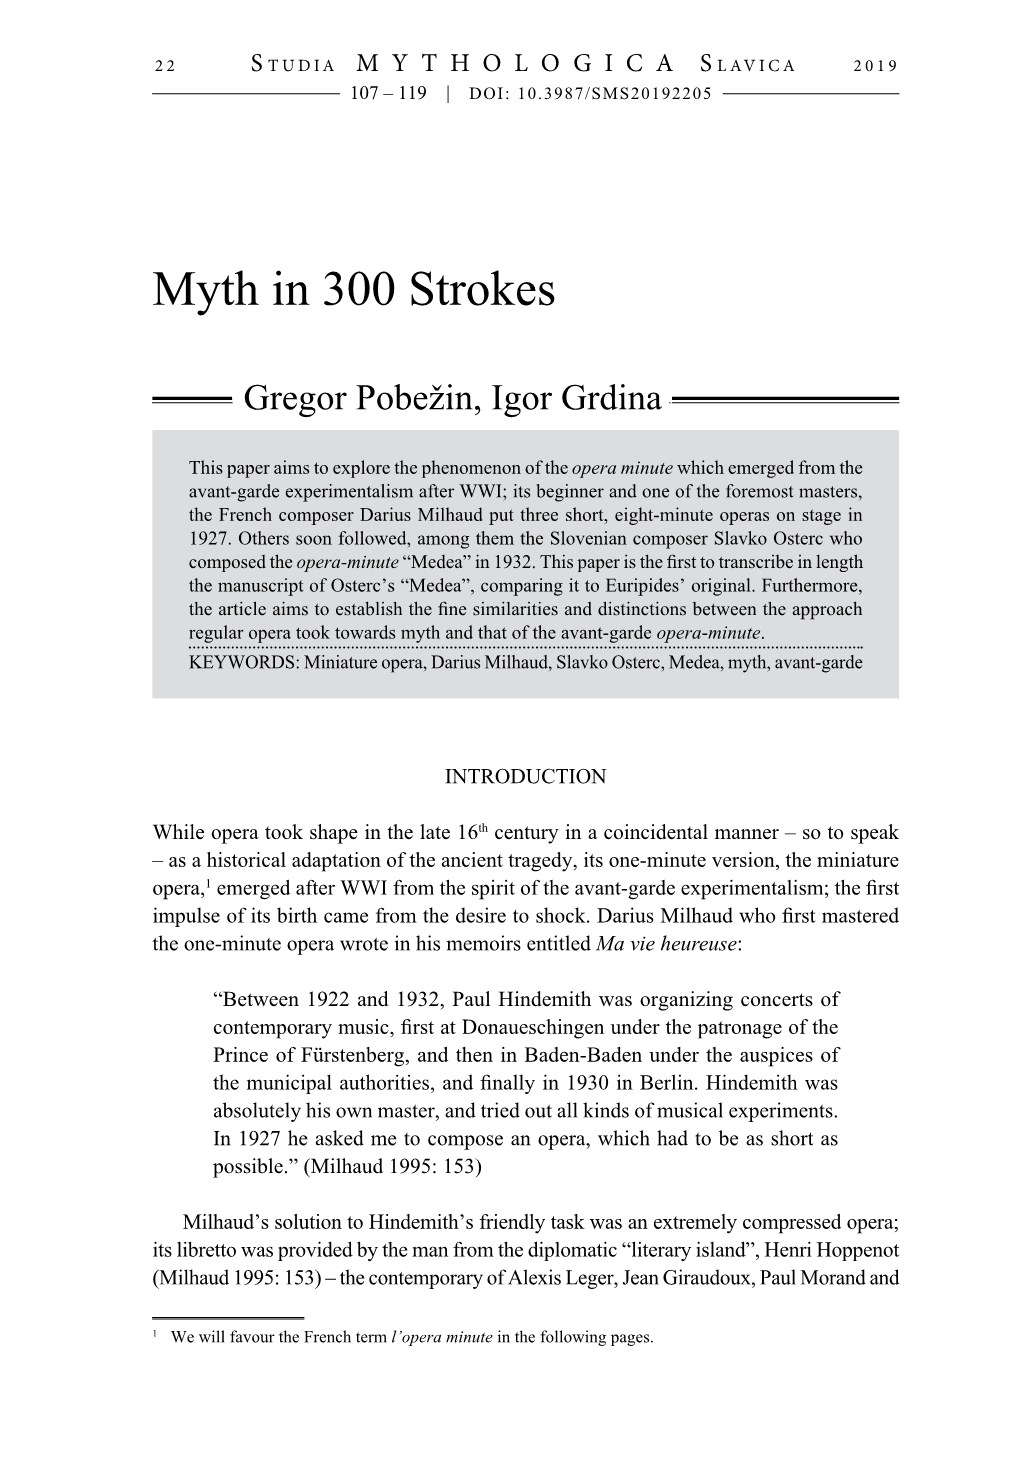 Myth in 300 Strokes